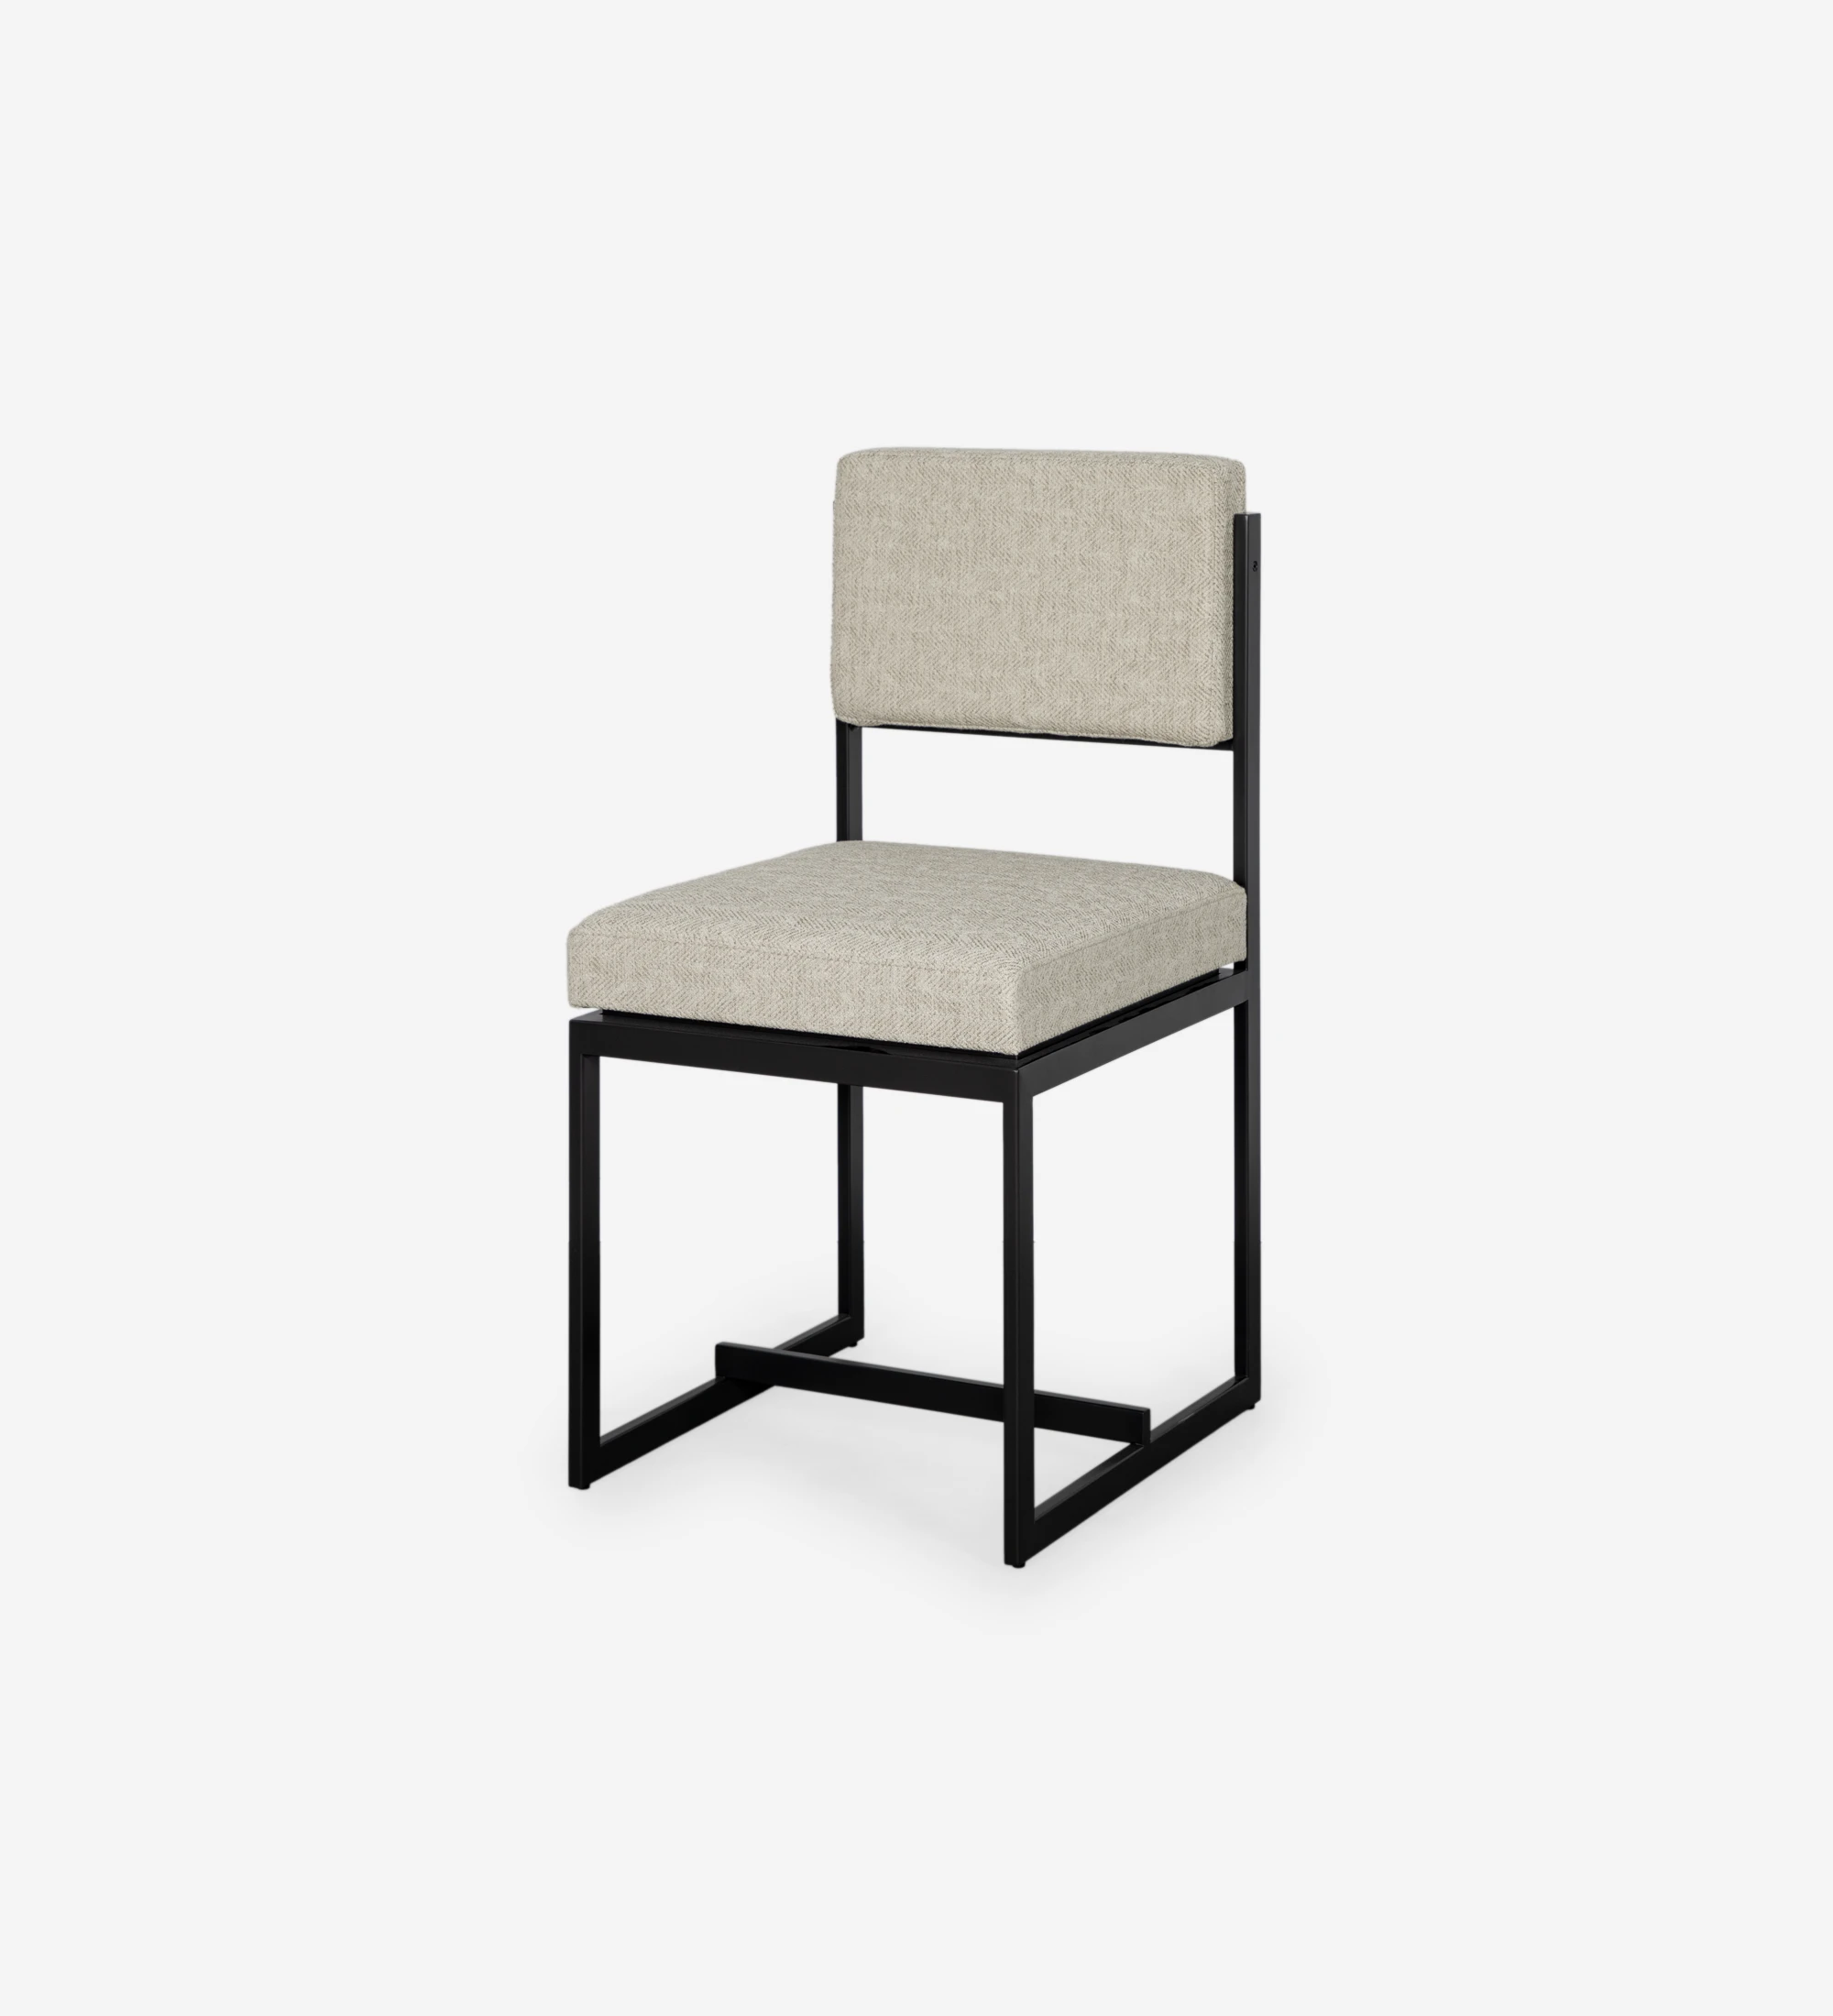 Cadeira com assento e encosto estofado a tecido, com estrutura metálica lacada a negro